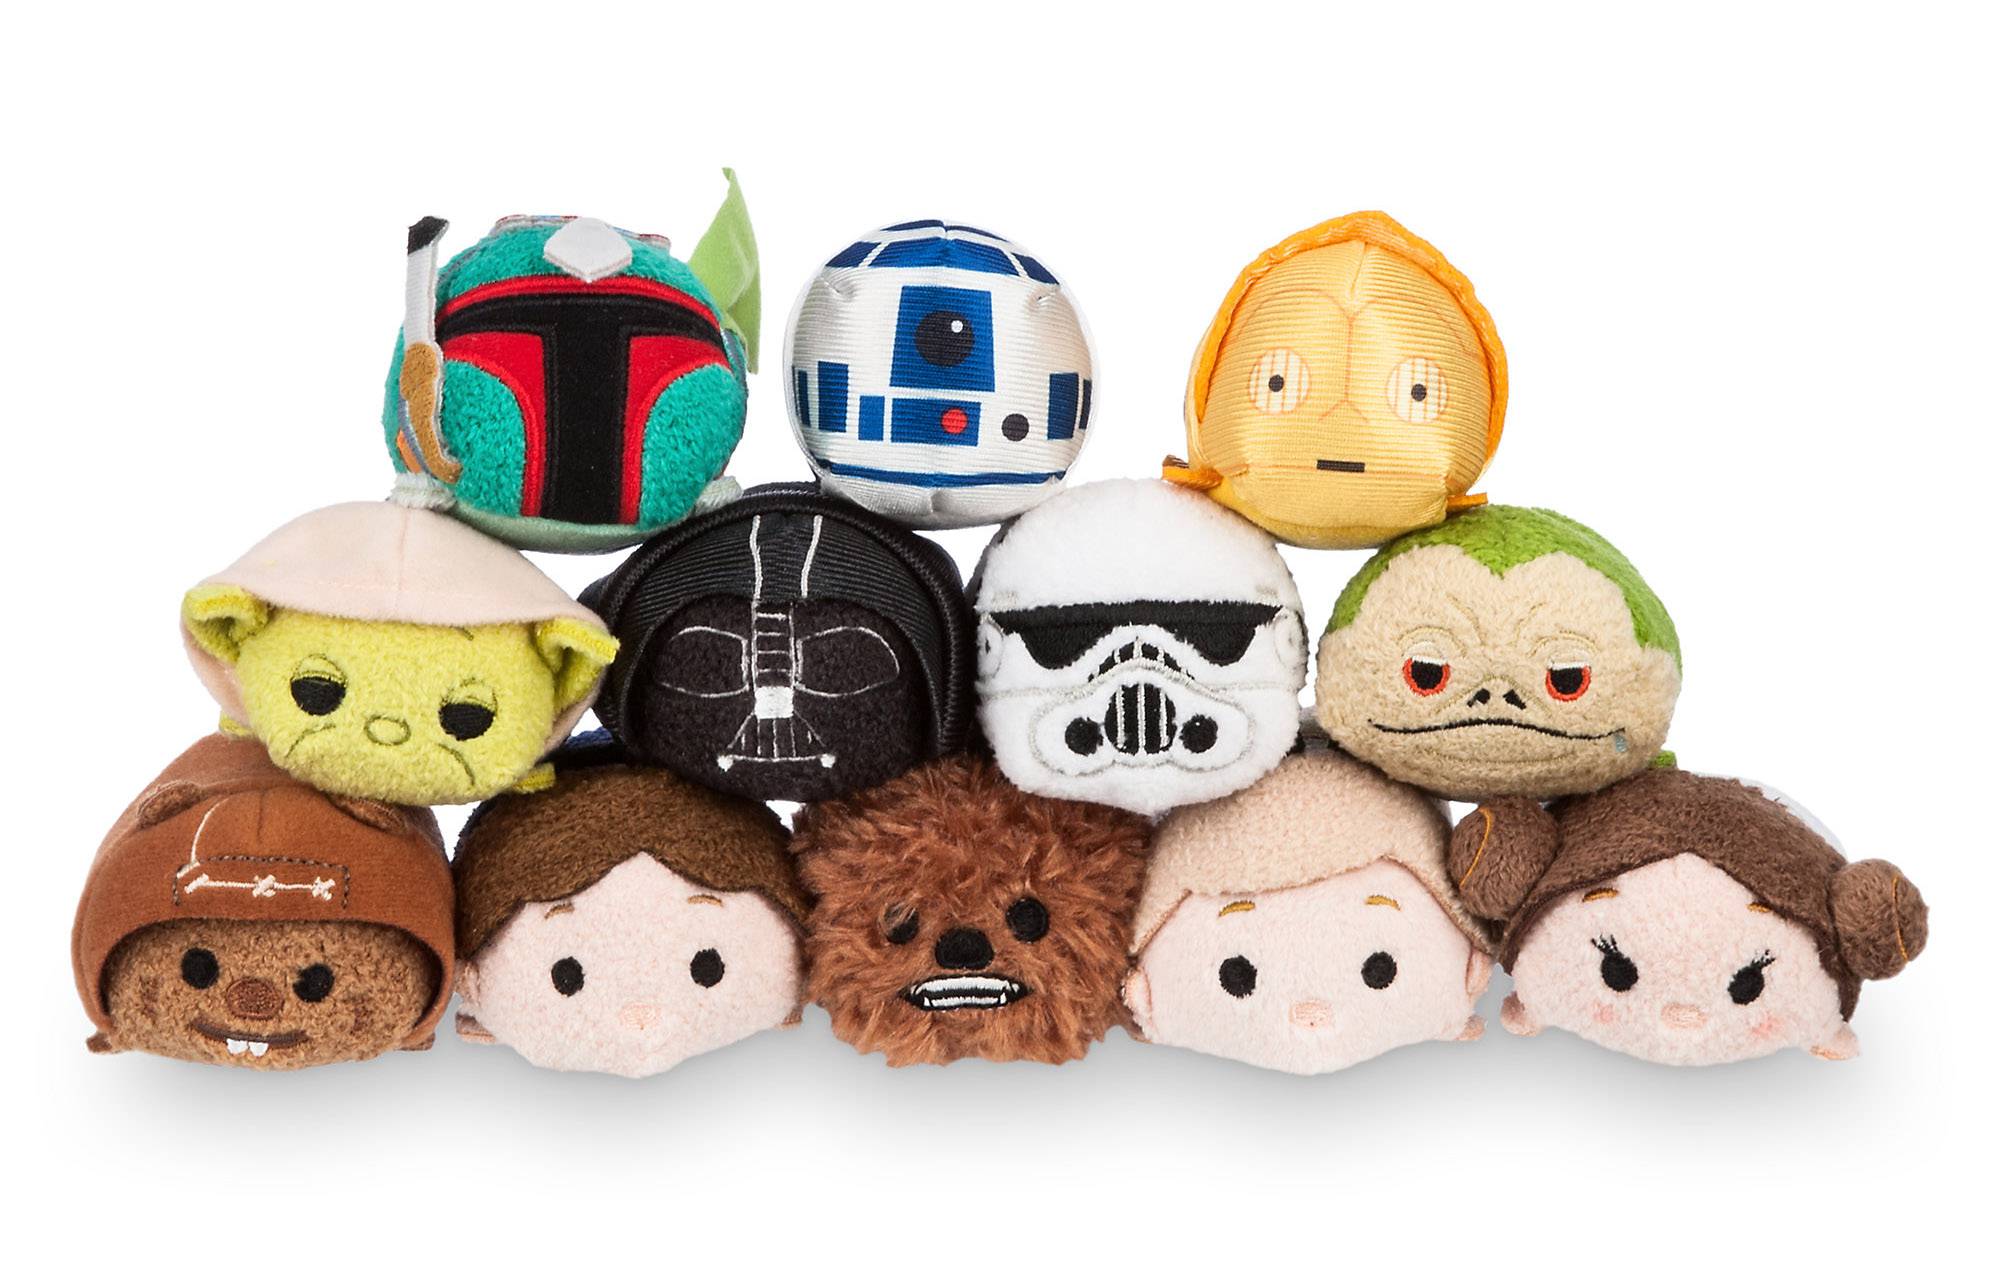 Disney Store Yoda Tsum Tsum Plush Star Wars Large 16" Stuffed Toy NWT Force USA 